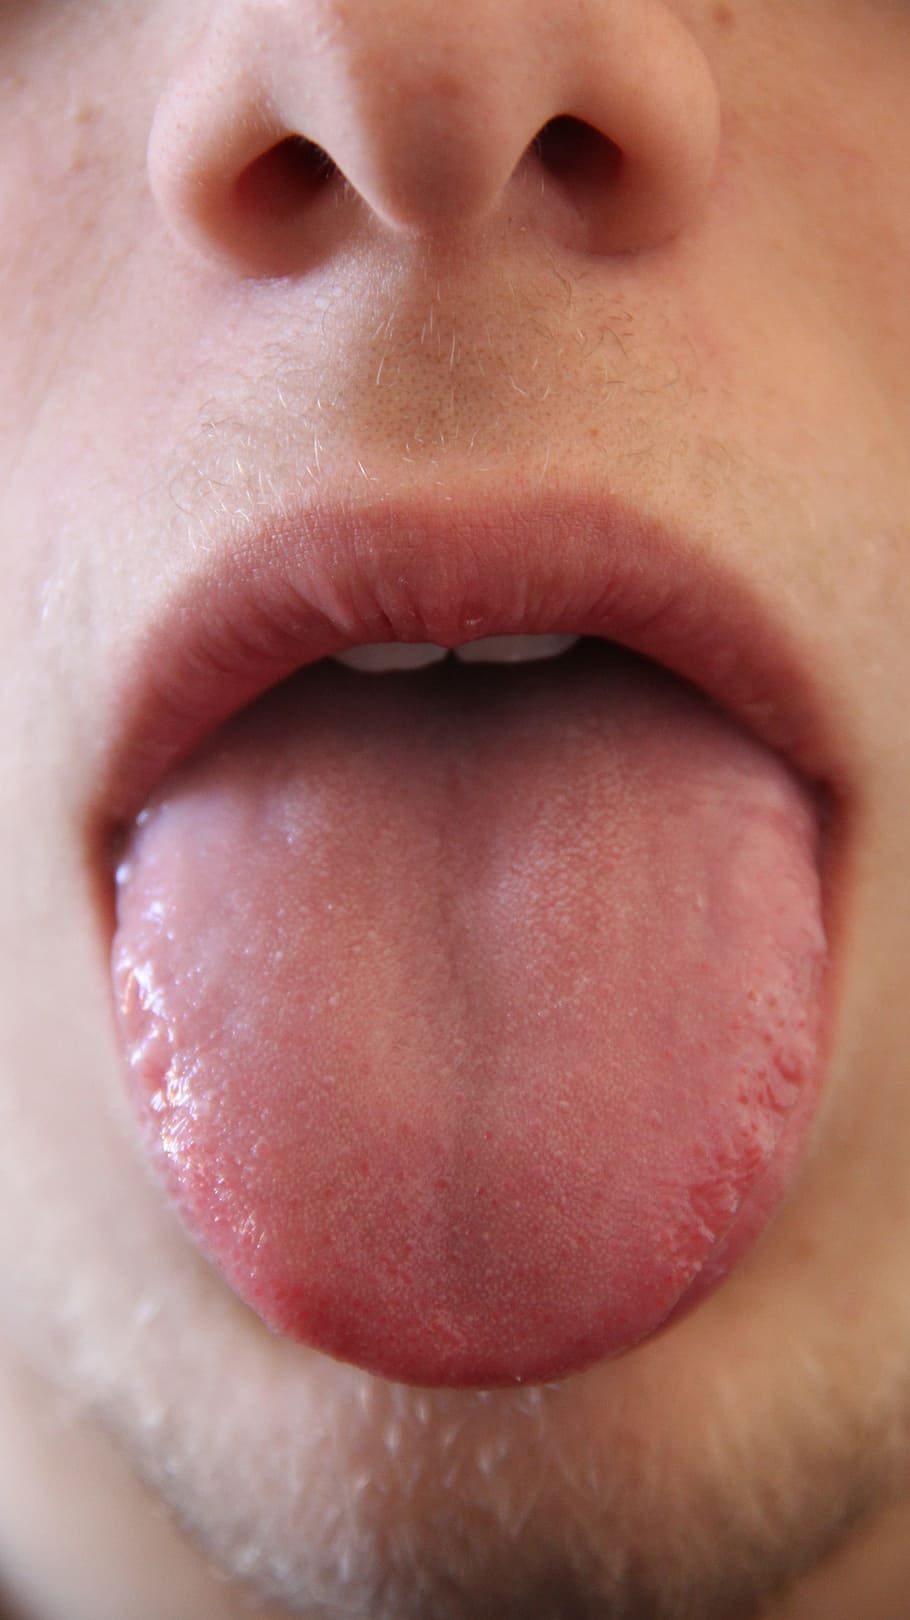 close, person, tongue, close up, mouth, mammal, human, anatomy, head, face